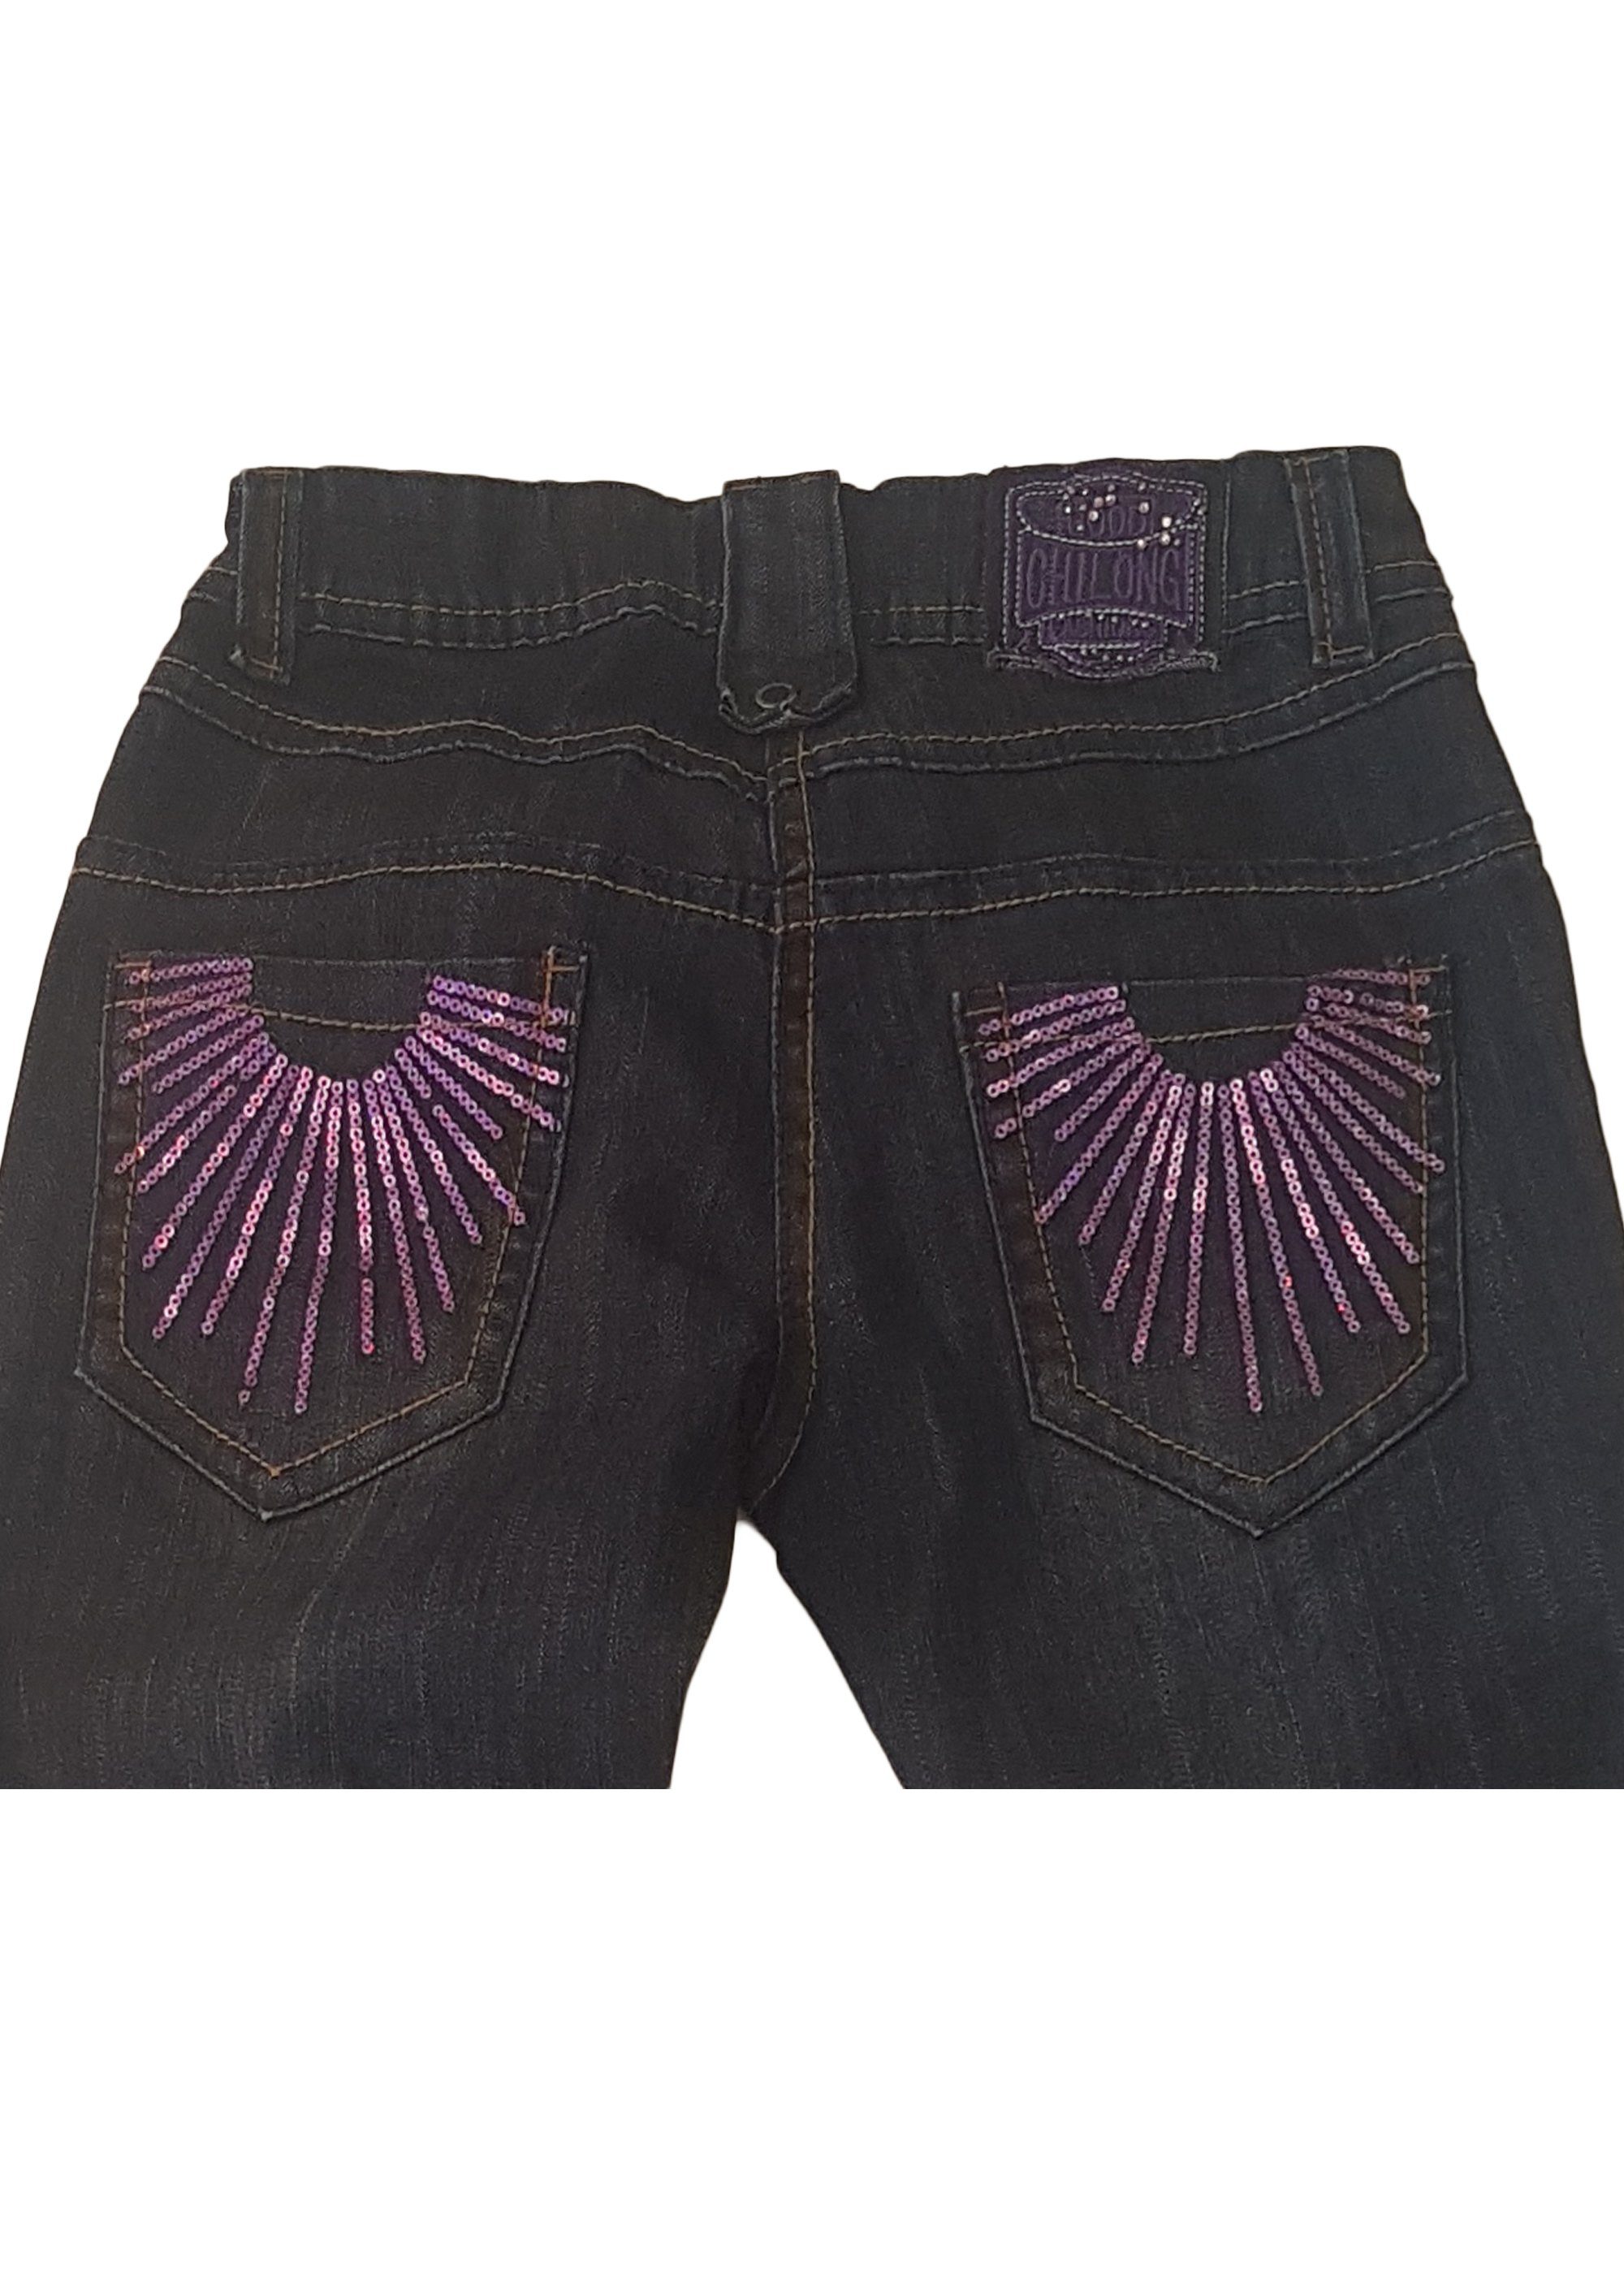 Details Stil niedlichen Family Pocket im Trends Slim-fit-Jeans 5 mit